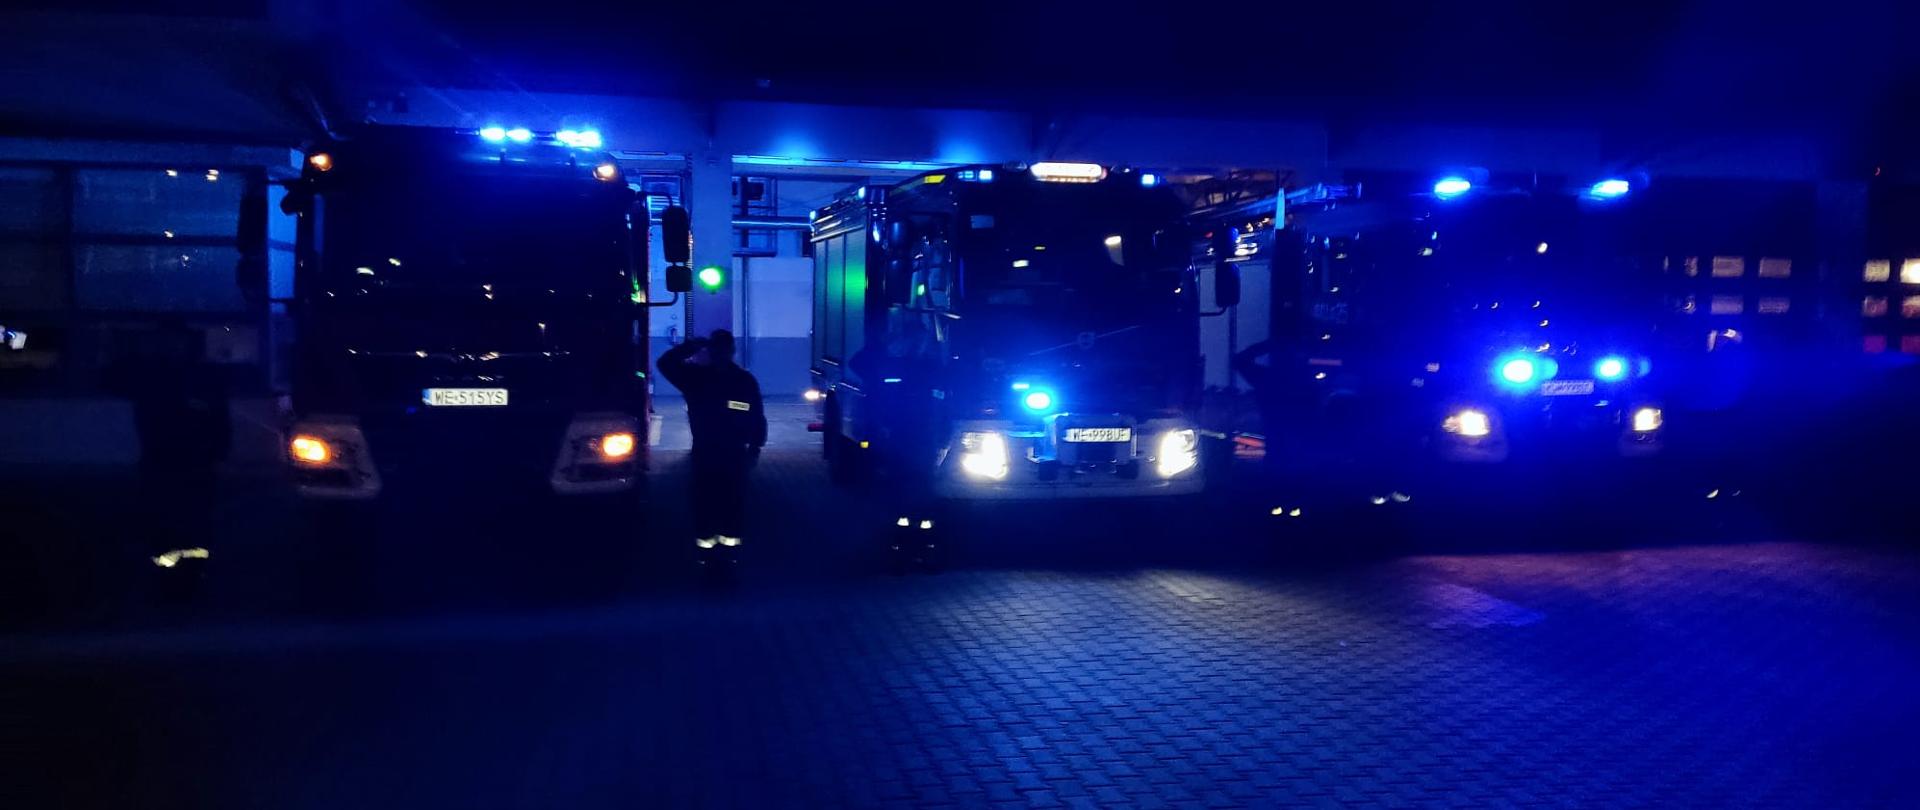 Strażacy stoją przy samochodach pożarniczych, które maja włączone światła błyskowe i sygnały dźwiękowe w celu oddania hołdu śp. sekc. Bartoszowi Błyskala, strażakowi - nurkowi SGRW-N KM PSP Gdańsk, który zmarł w skutek wypadku podczas prowadzonych działań